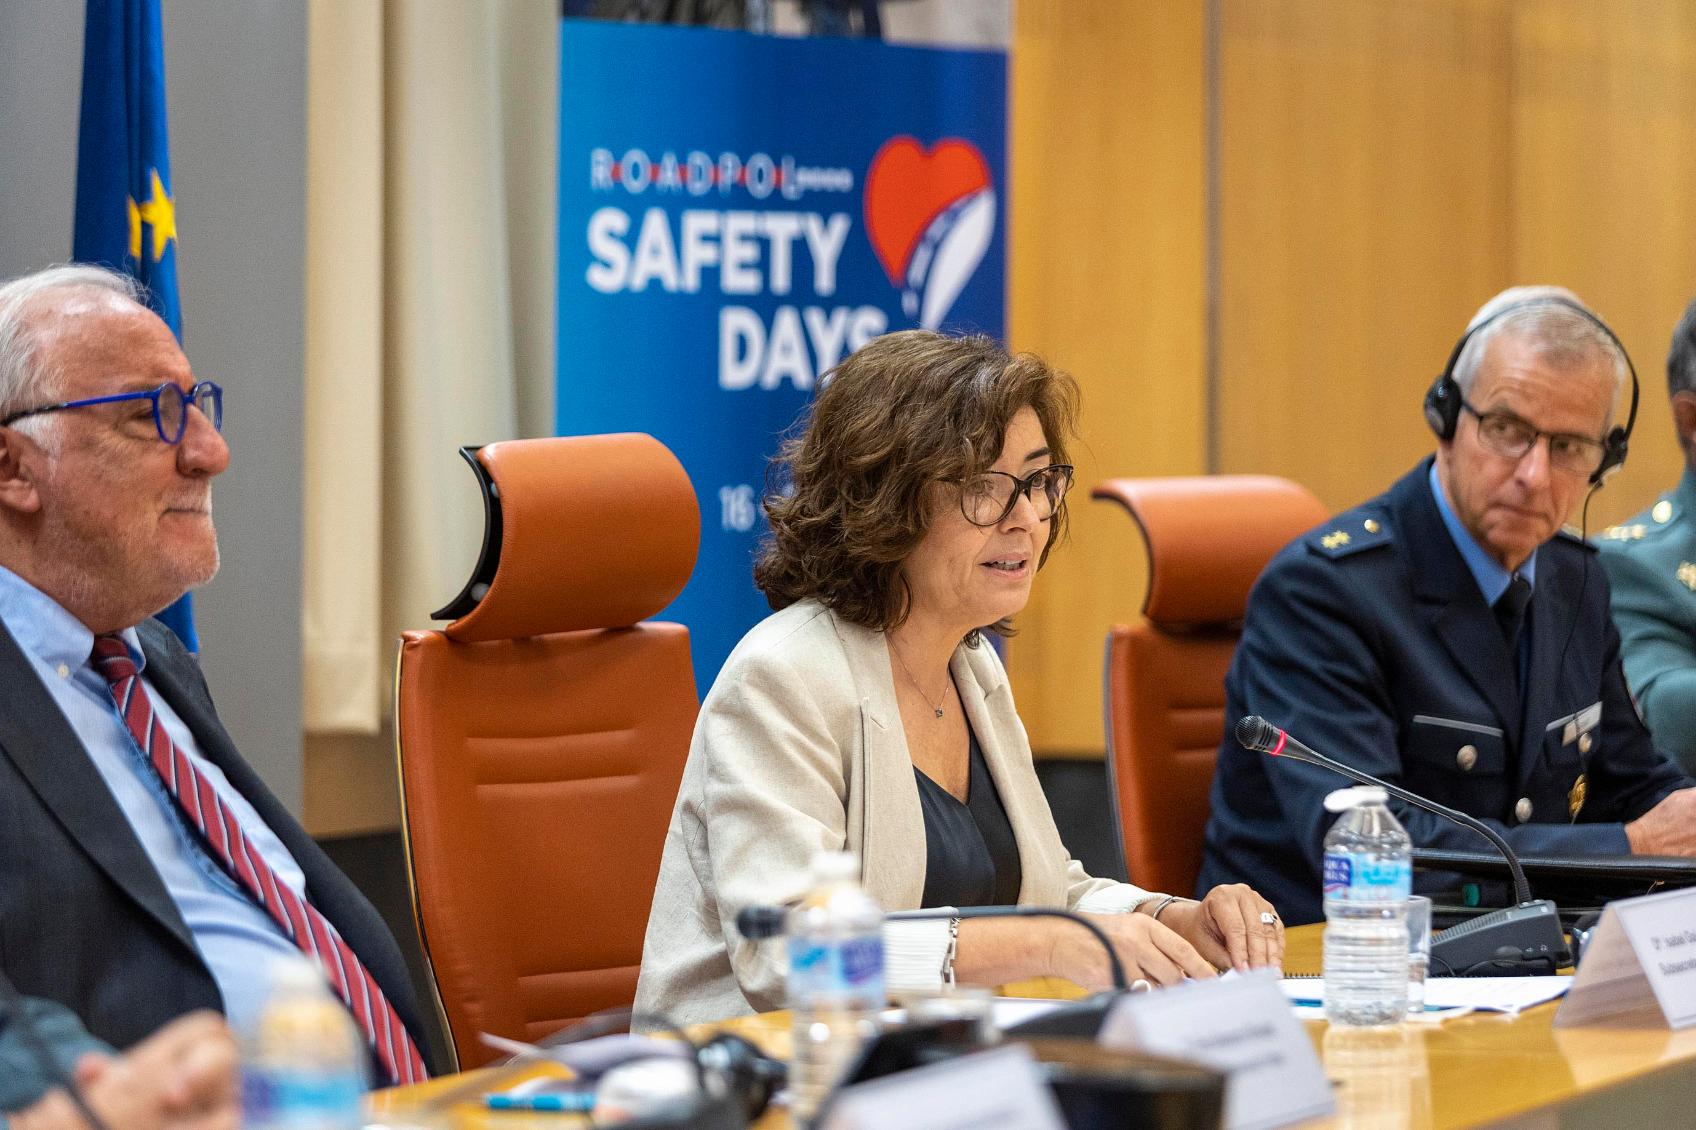 La subsecretaria de Interior preside la presentación de ROADPOL de los resultados de los Safety Days 2022